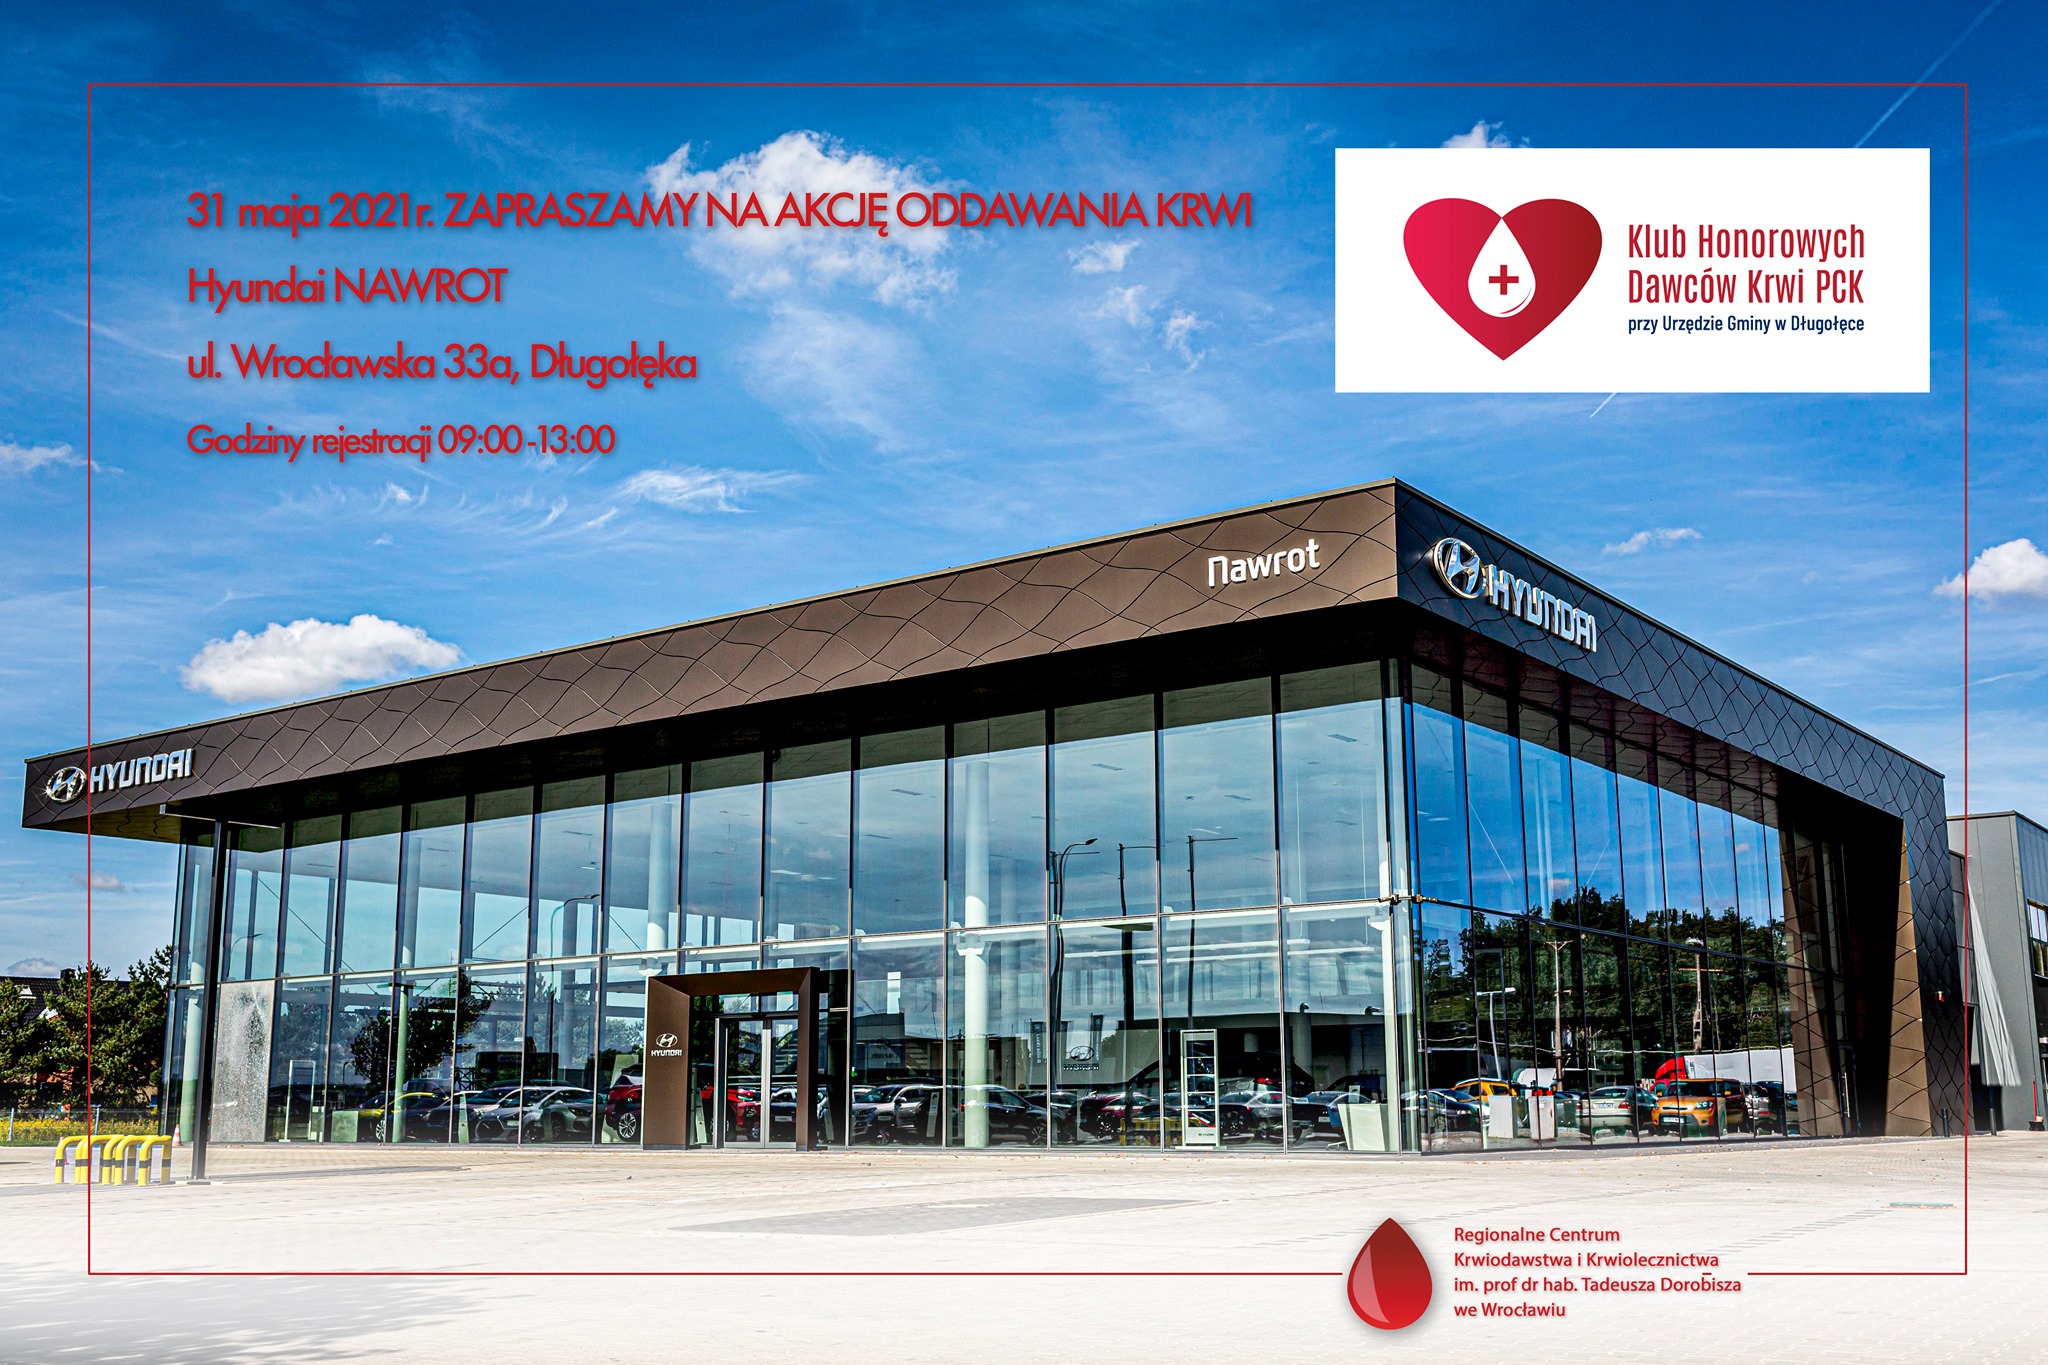 Akcja oddawania krwi – org. KHDK i Hyundai Nawrot